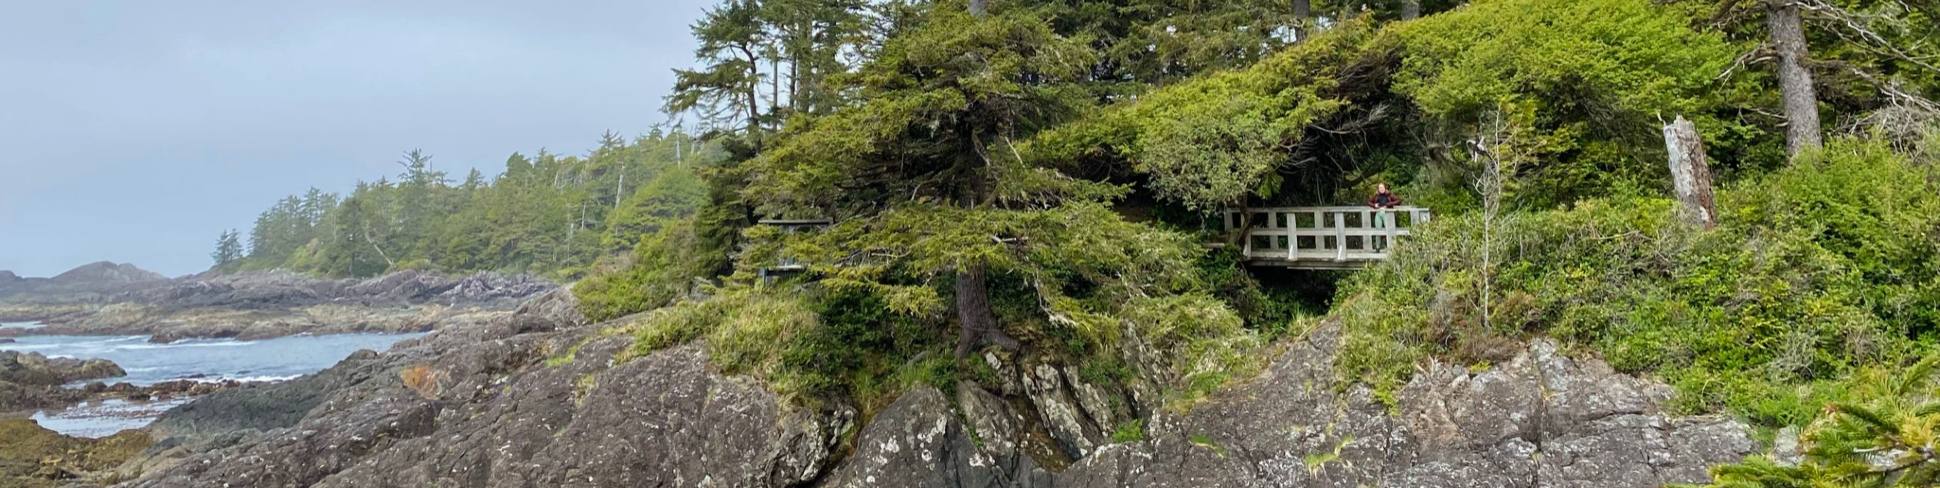 ancient cedars in wistler